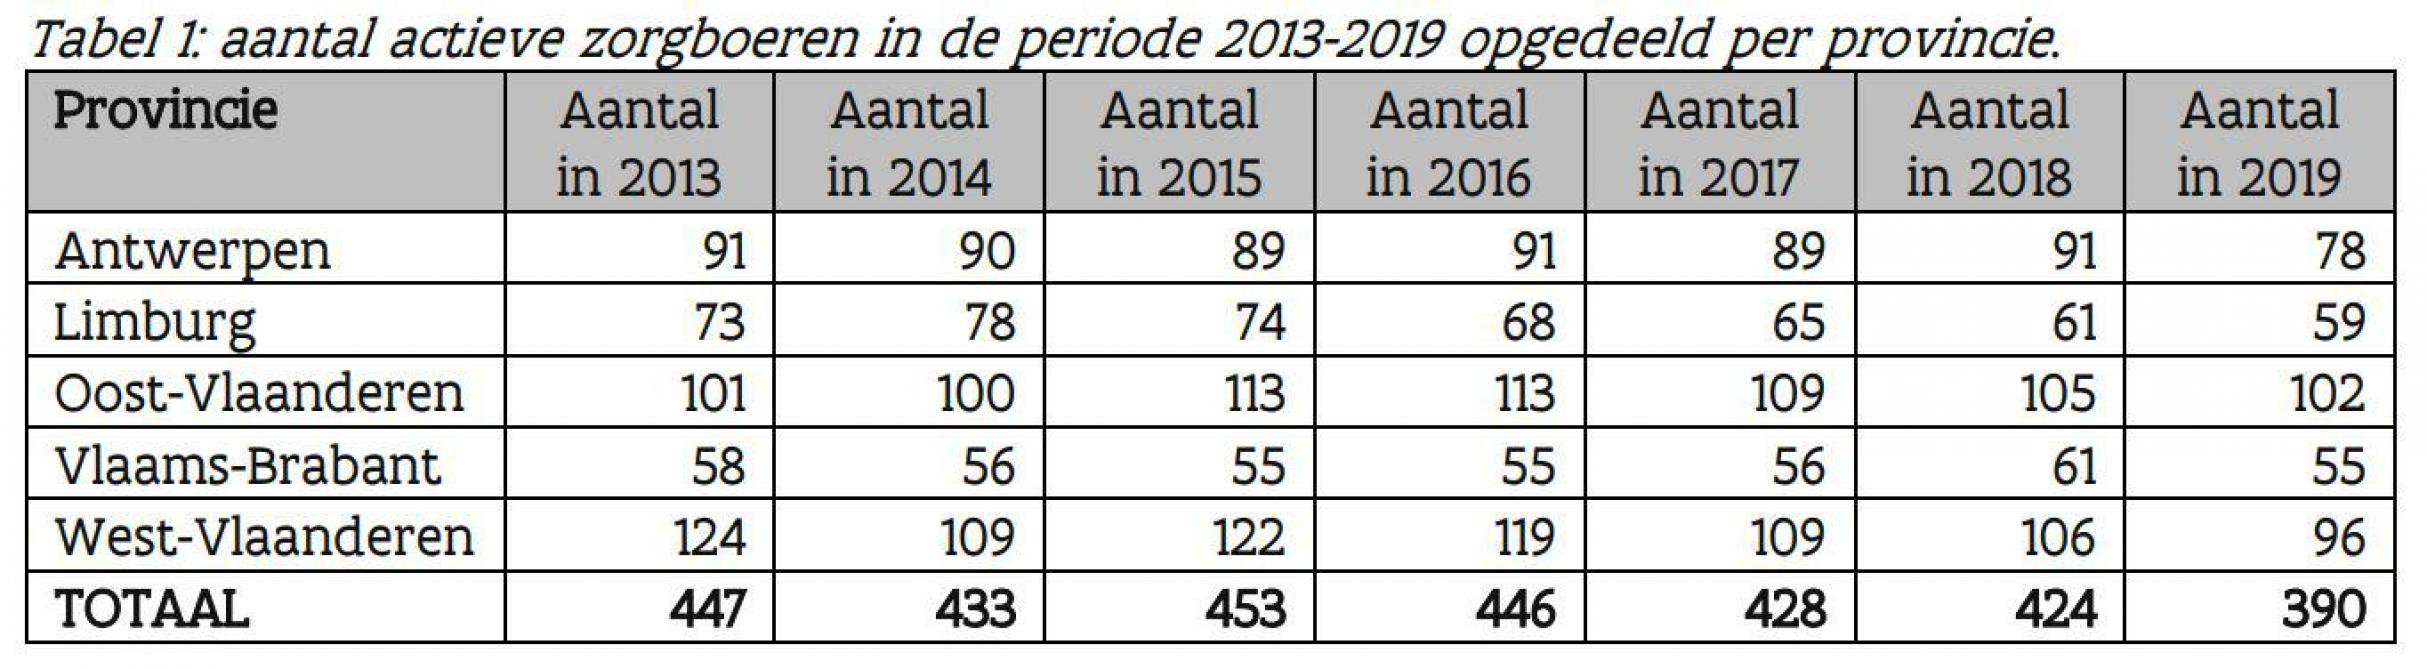 Het aantal actieve zorgboerderijen in de periode 2013 - 2019, opgedeeld per provincie.